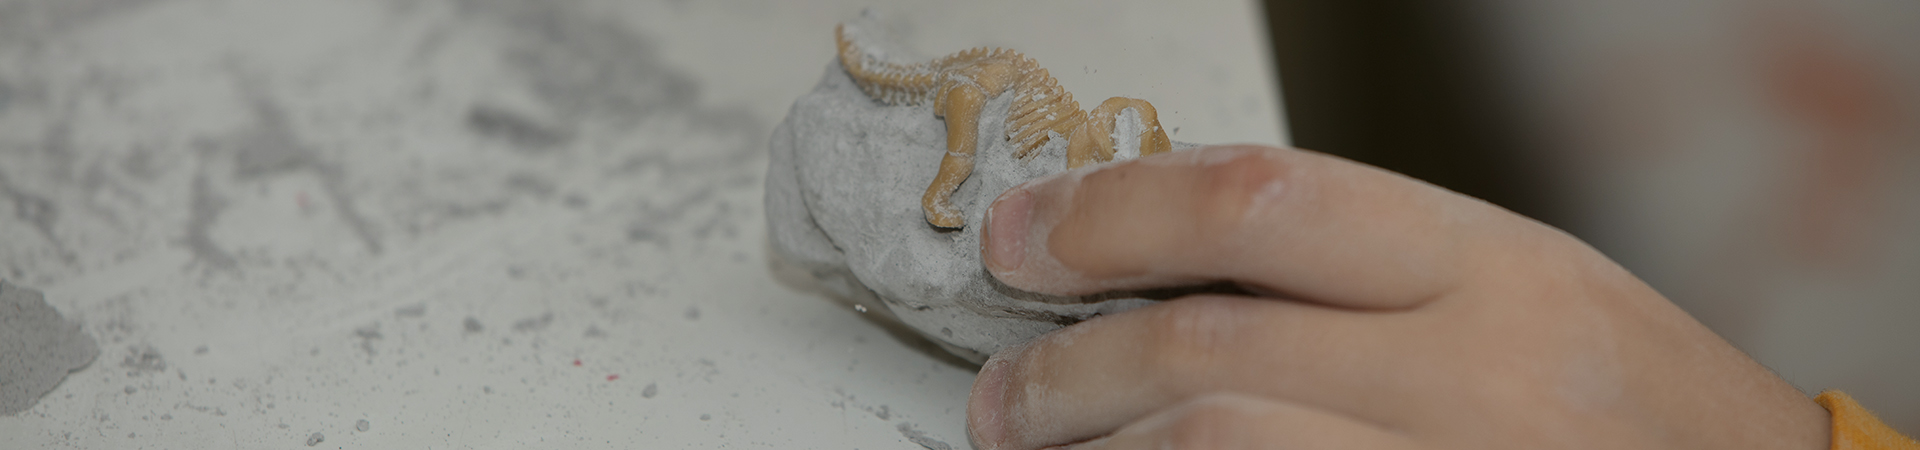 egy oktatási játék képe, ahol kövületeket találhat egy kis régész számára, ásó gyerekek kezével